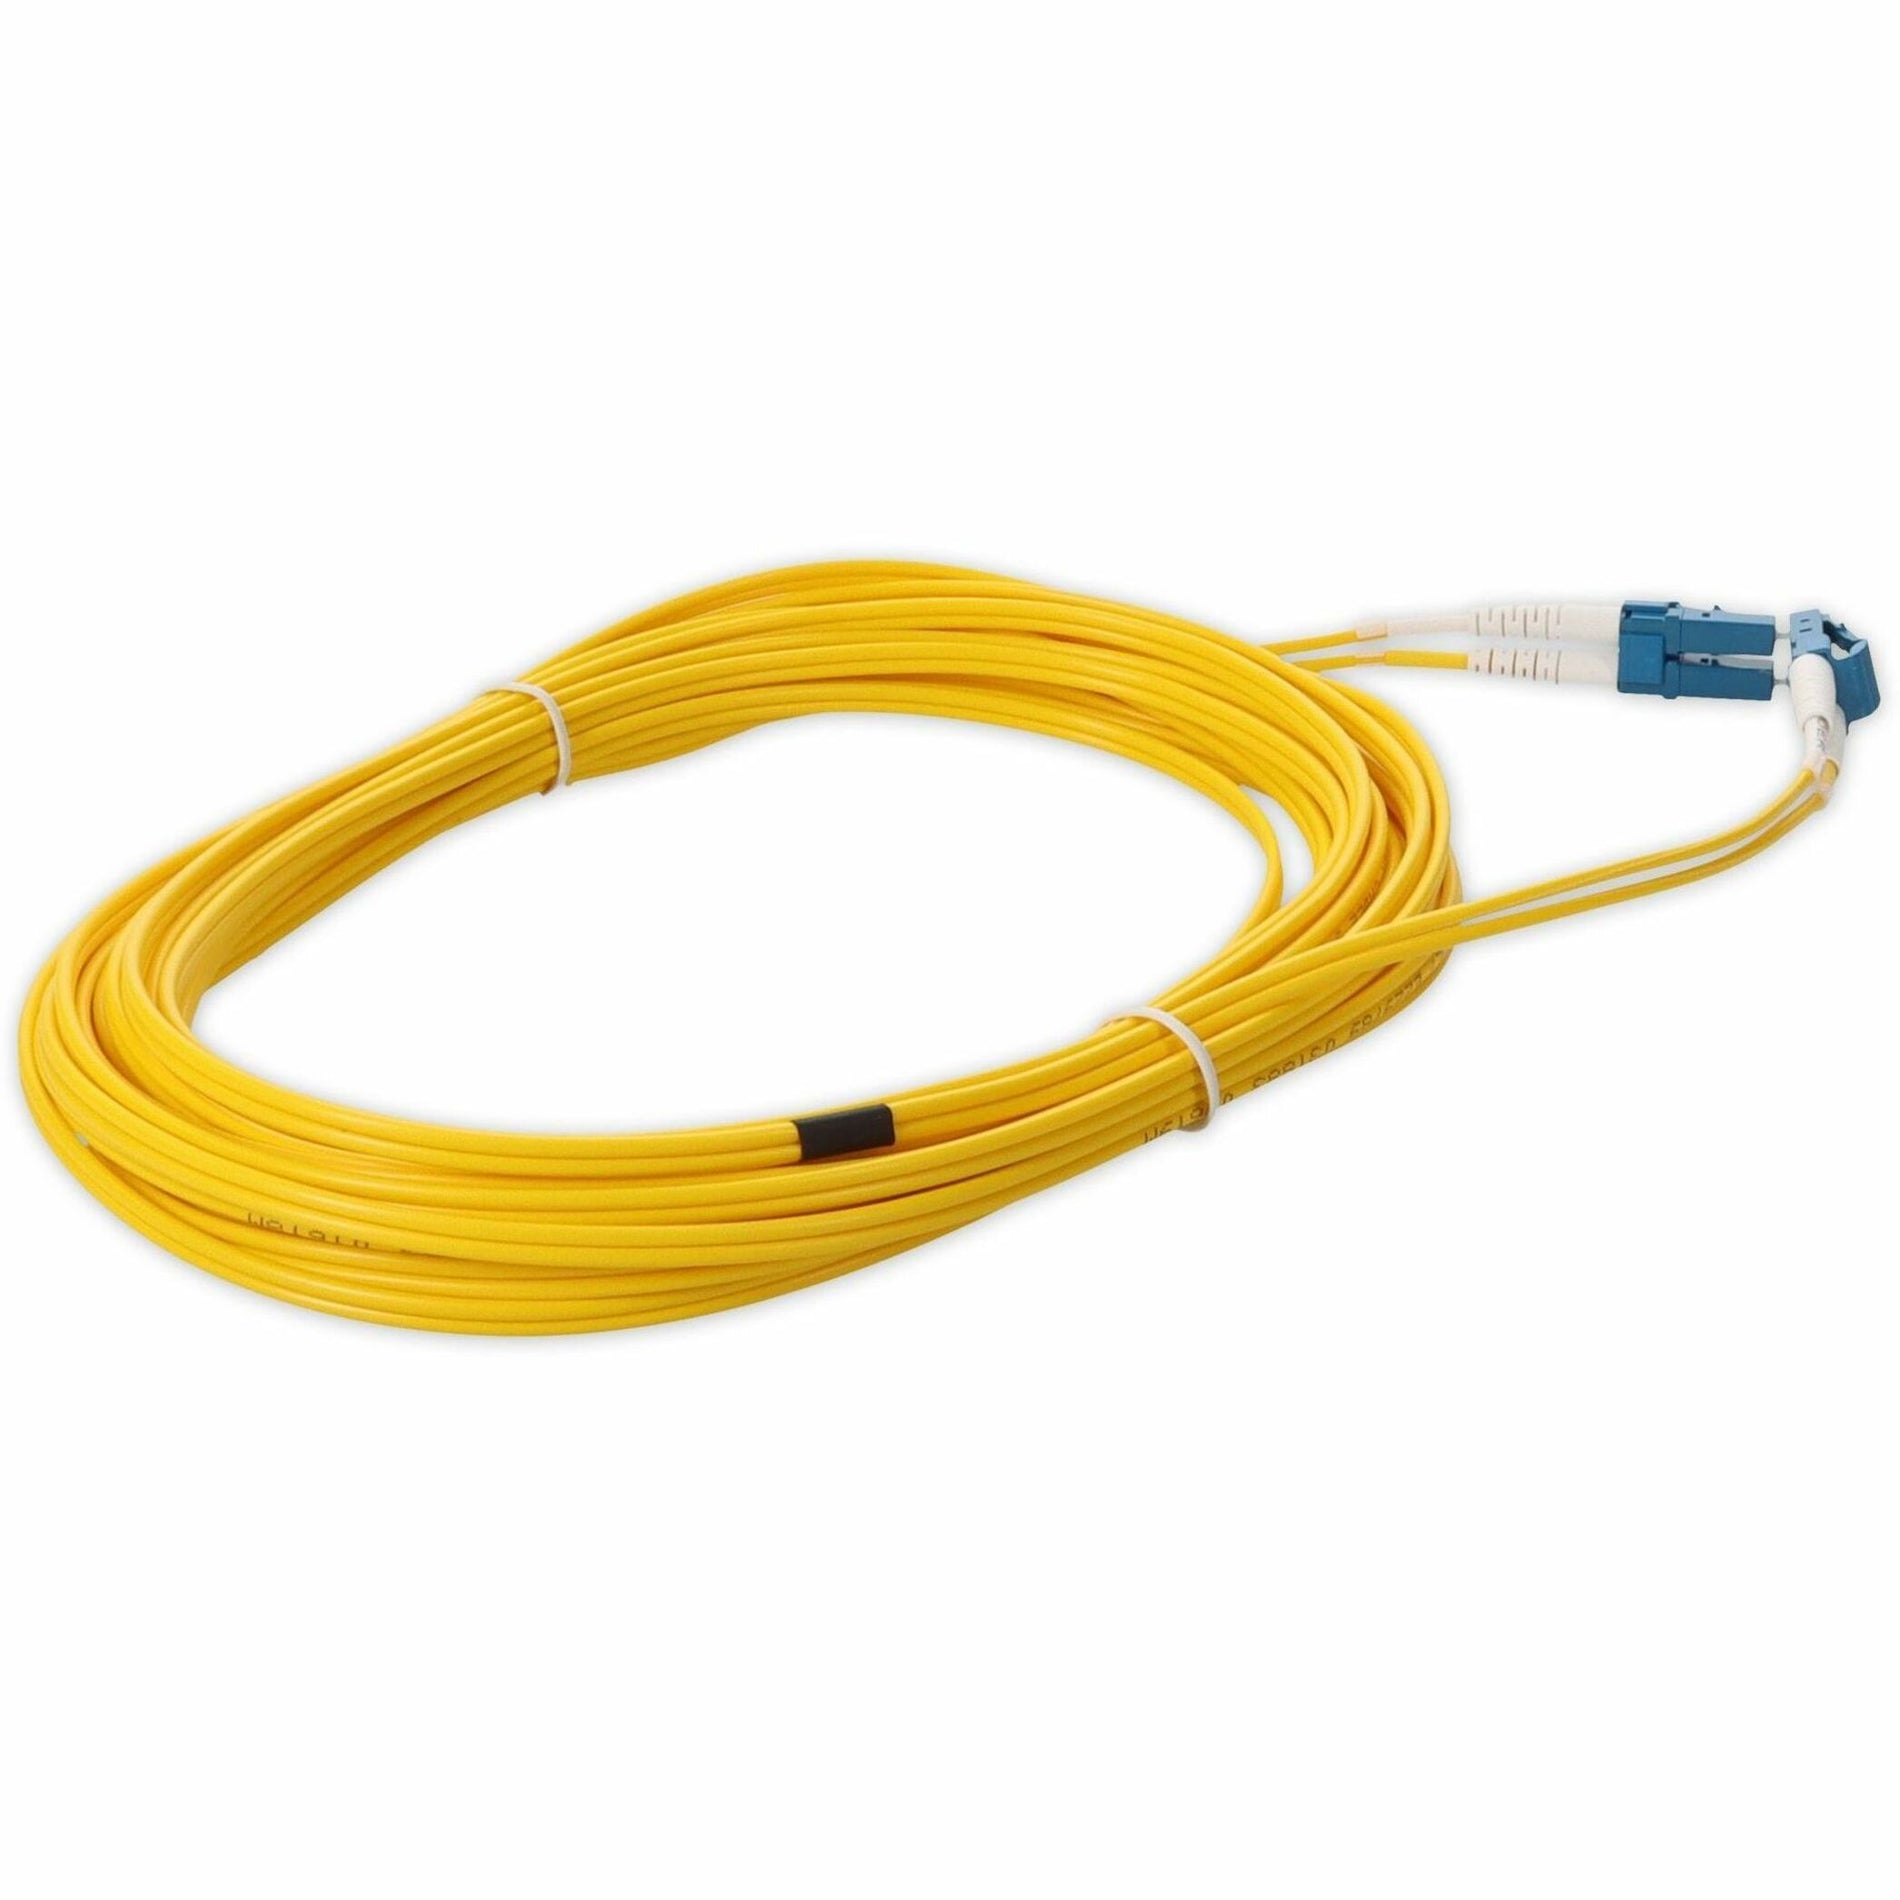 Ajouter le câble de raccordement jaune duplex LC/LC monomode (SMF) de 4 mètres ADD-LC-LC-4M9SMF avec connecteurs moulés 1312 pieds